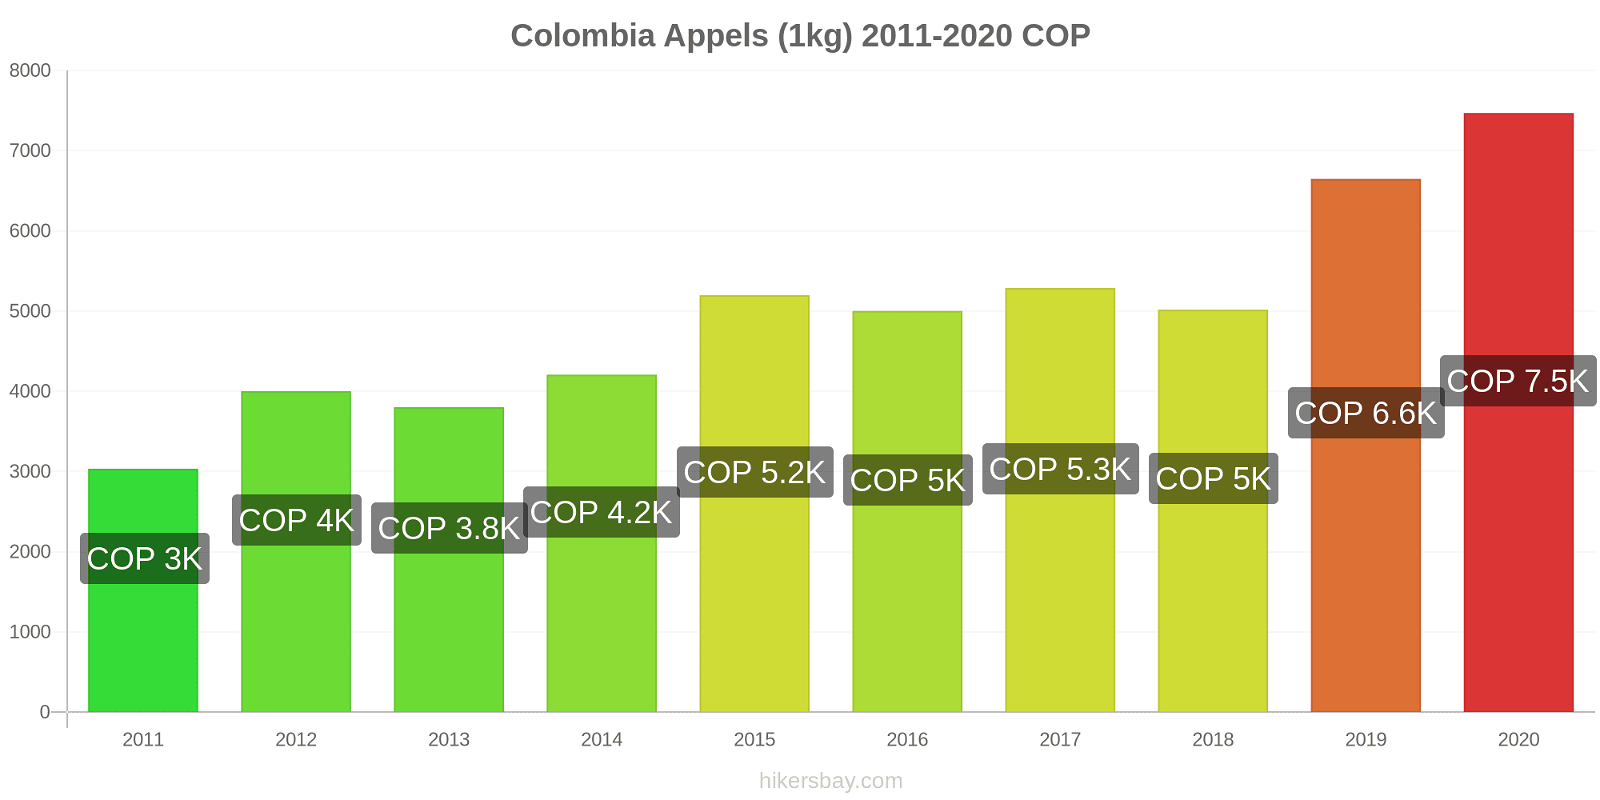 Colombia prijswijzigingen Appels (1kg) hikersbay.com